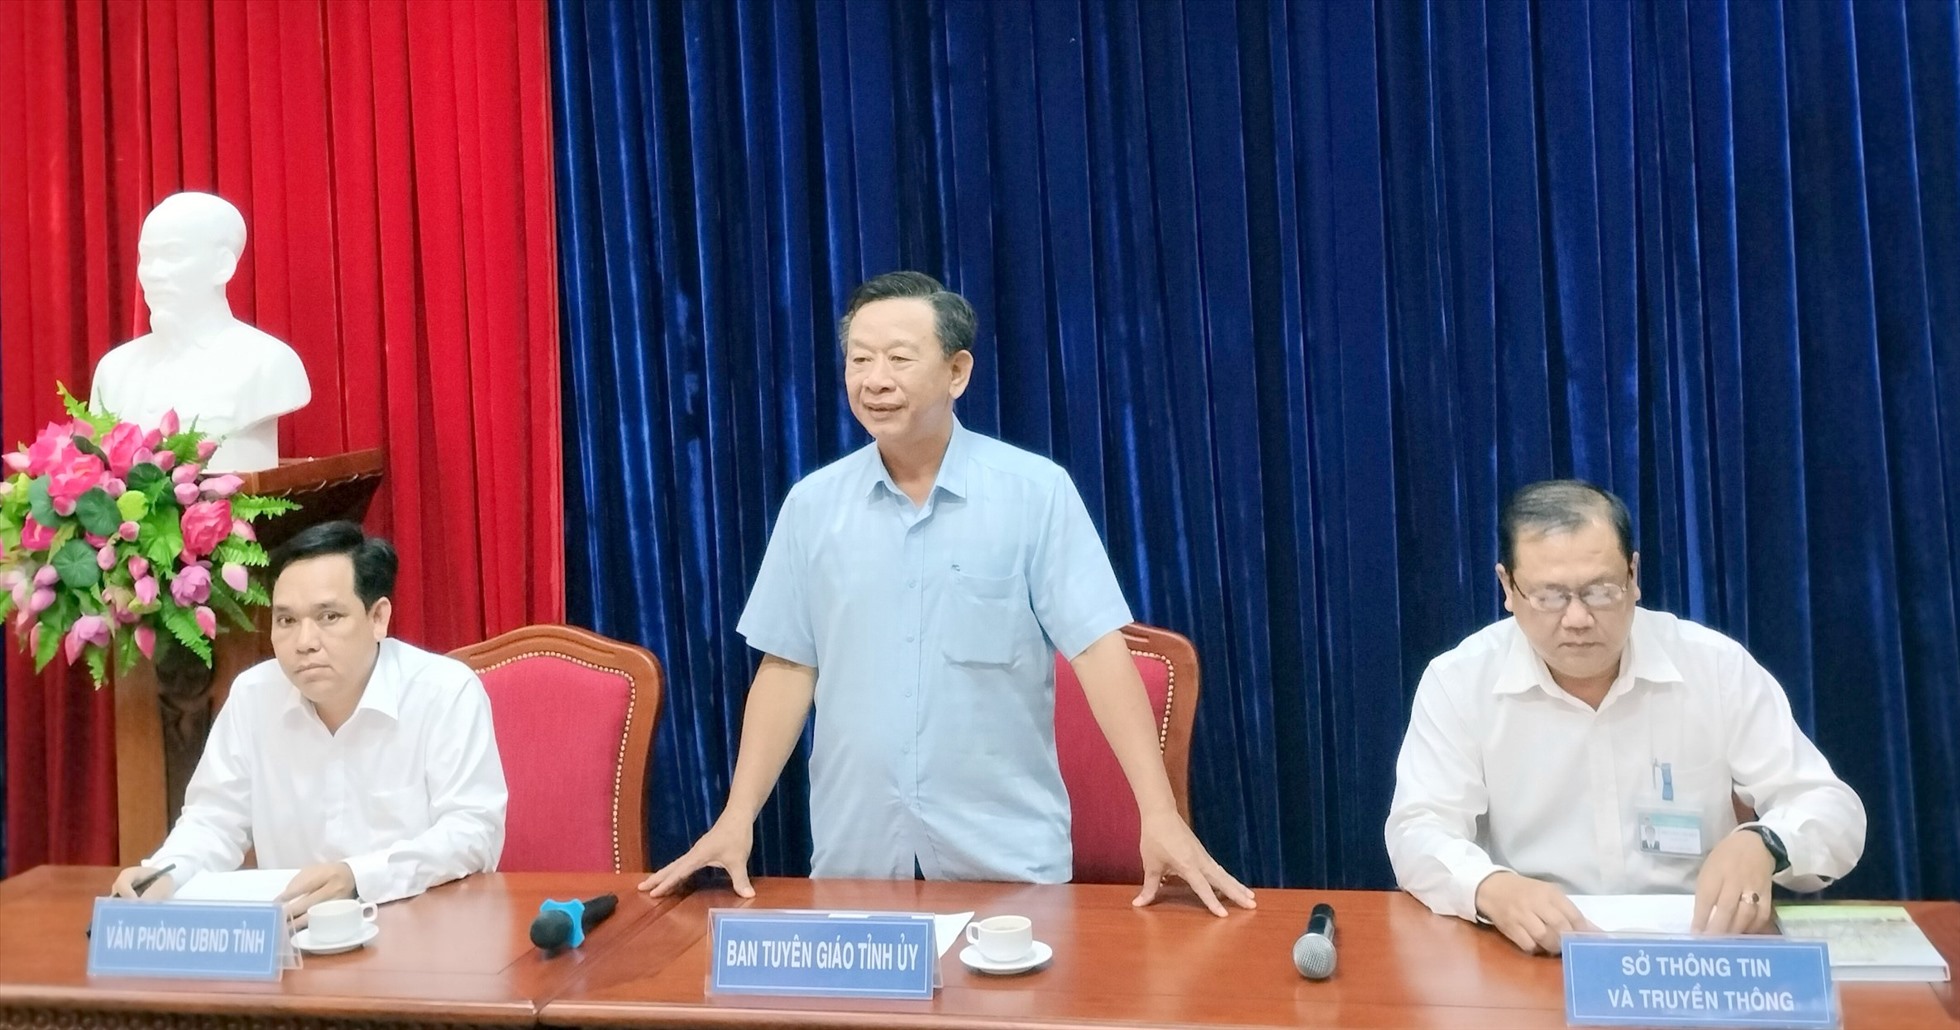 Trưởng Ban Tuyên giáo Tỉnh ủy Cà Mau họp báo cho biết đang xác minh đoạn ghi âm nhạy cảm liên quan đến Phó chủ tịch UBND huyện Phú Tân. Ảnh: Nhật Hồ